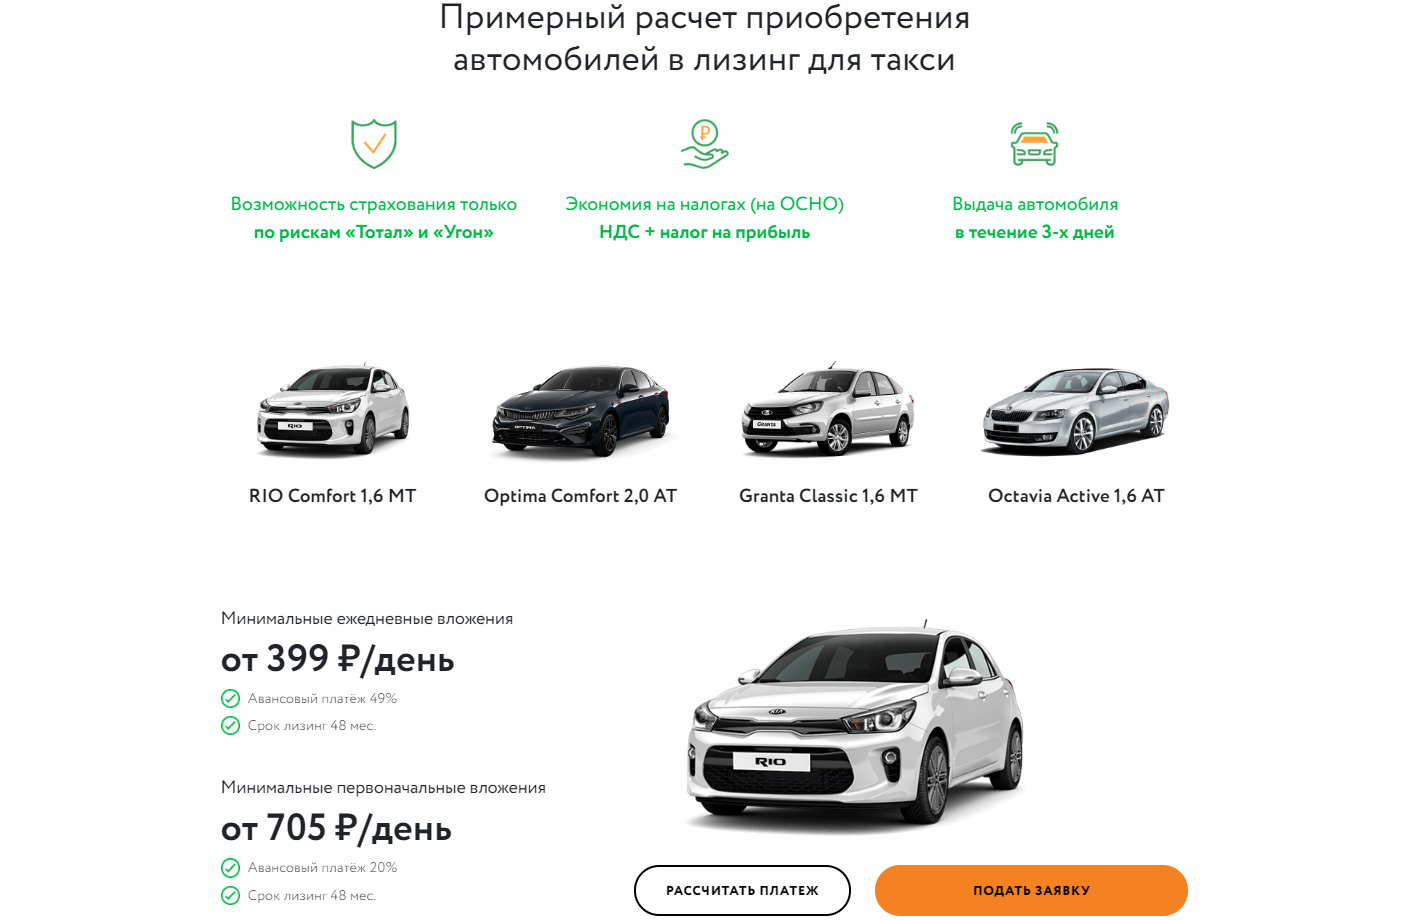 Как взять автомобиль в лизинг физическим лицам: 7 главных правил — finfex.ru